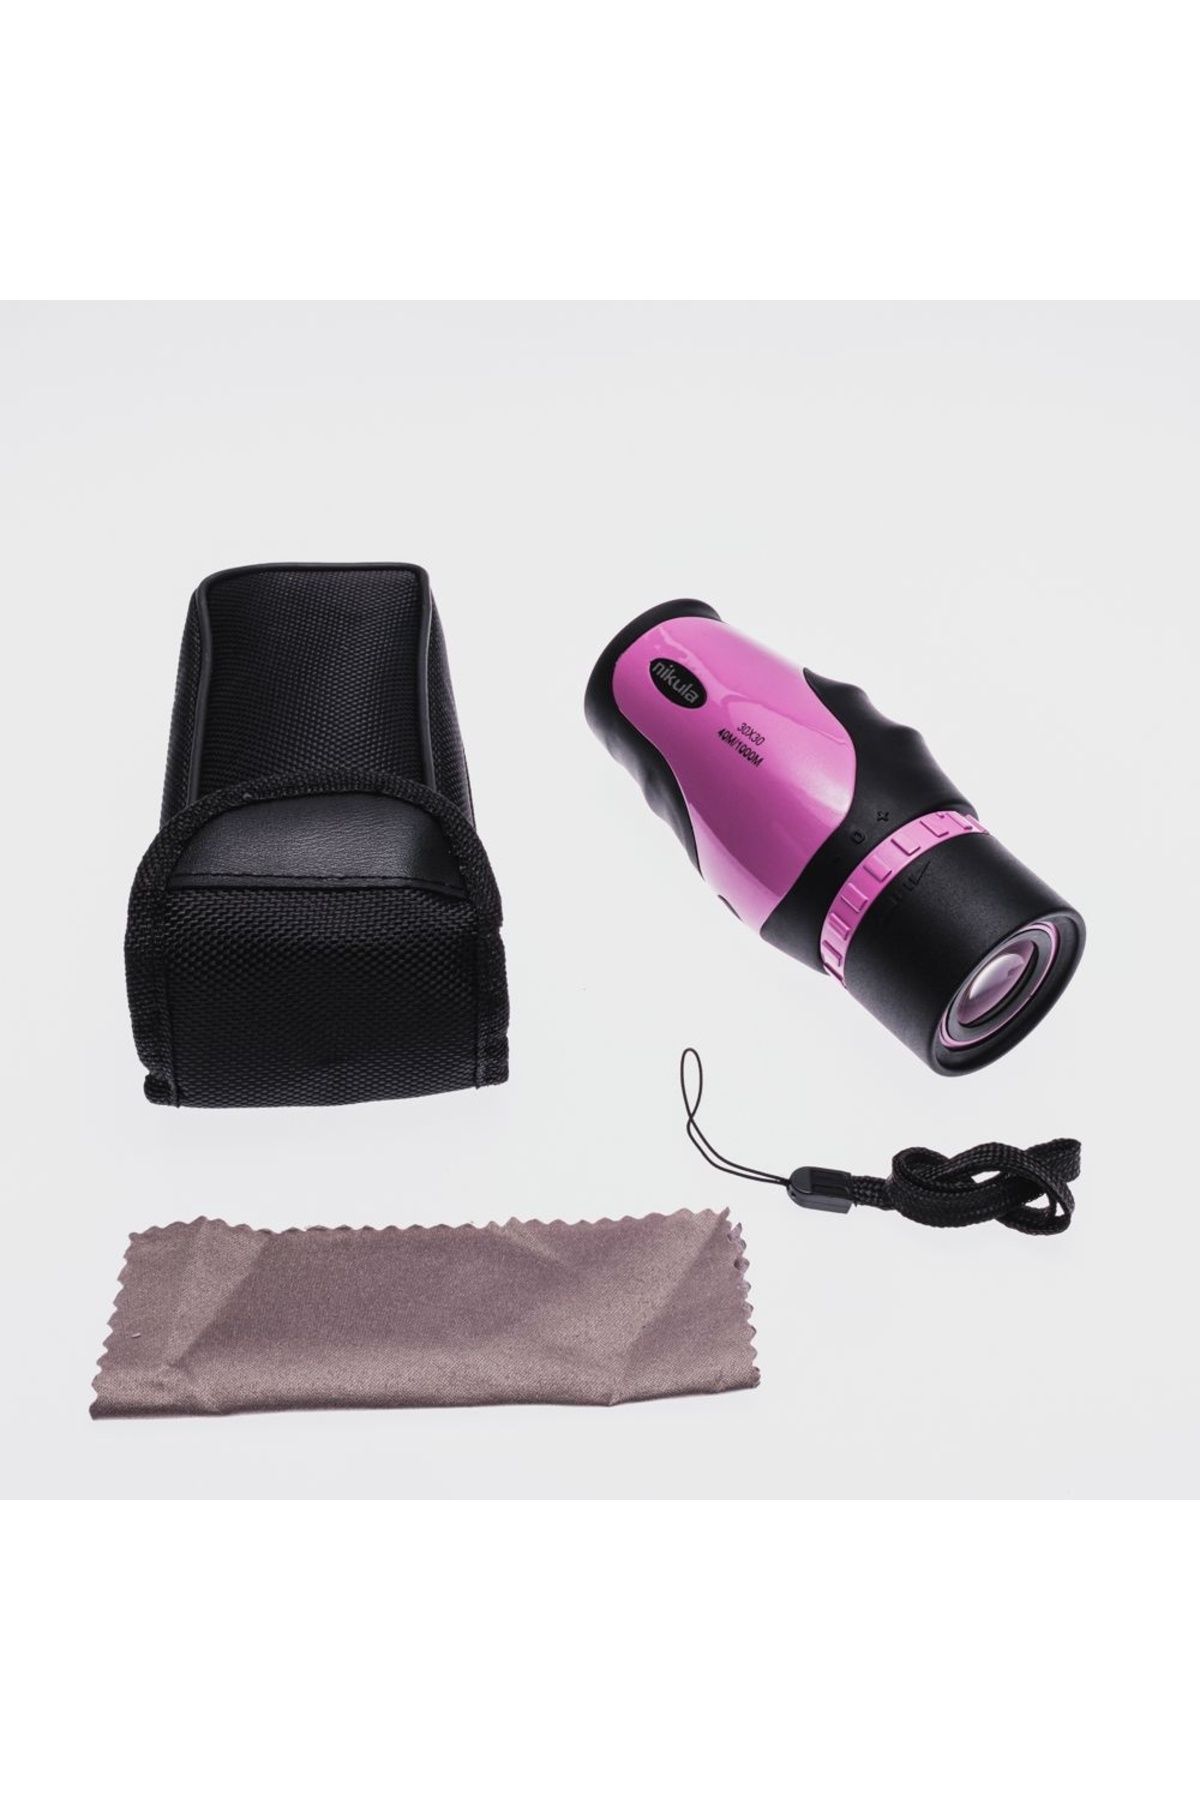 Purple Store Nikula 30X30 Tek Gözlü Ayarı Gerektirmeyen Perma Focus Otomatık Netleme Dürbün Fuşya